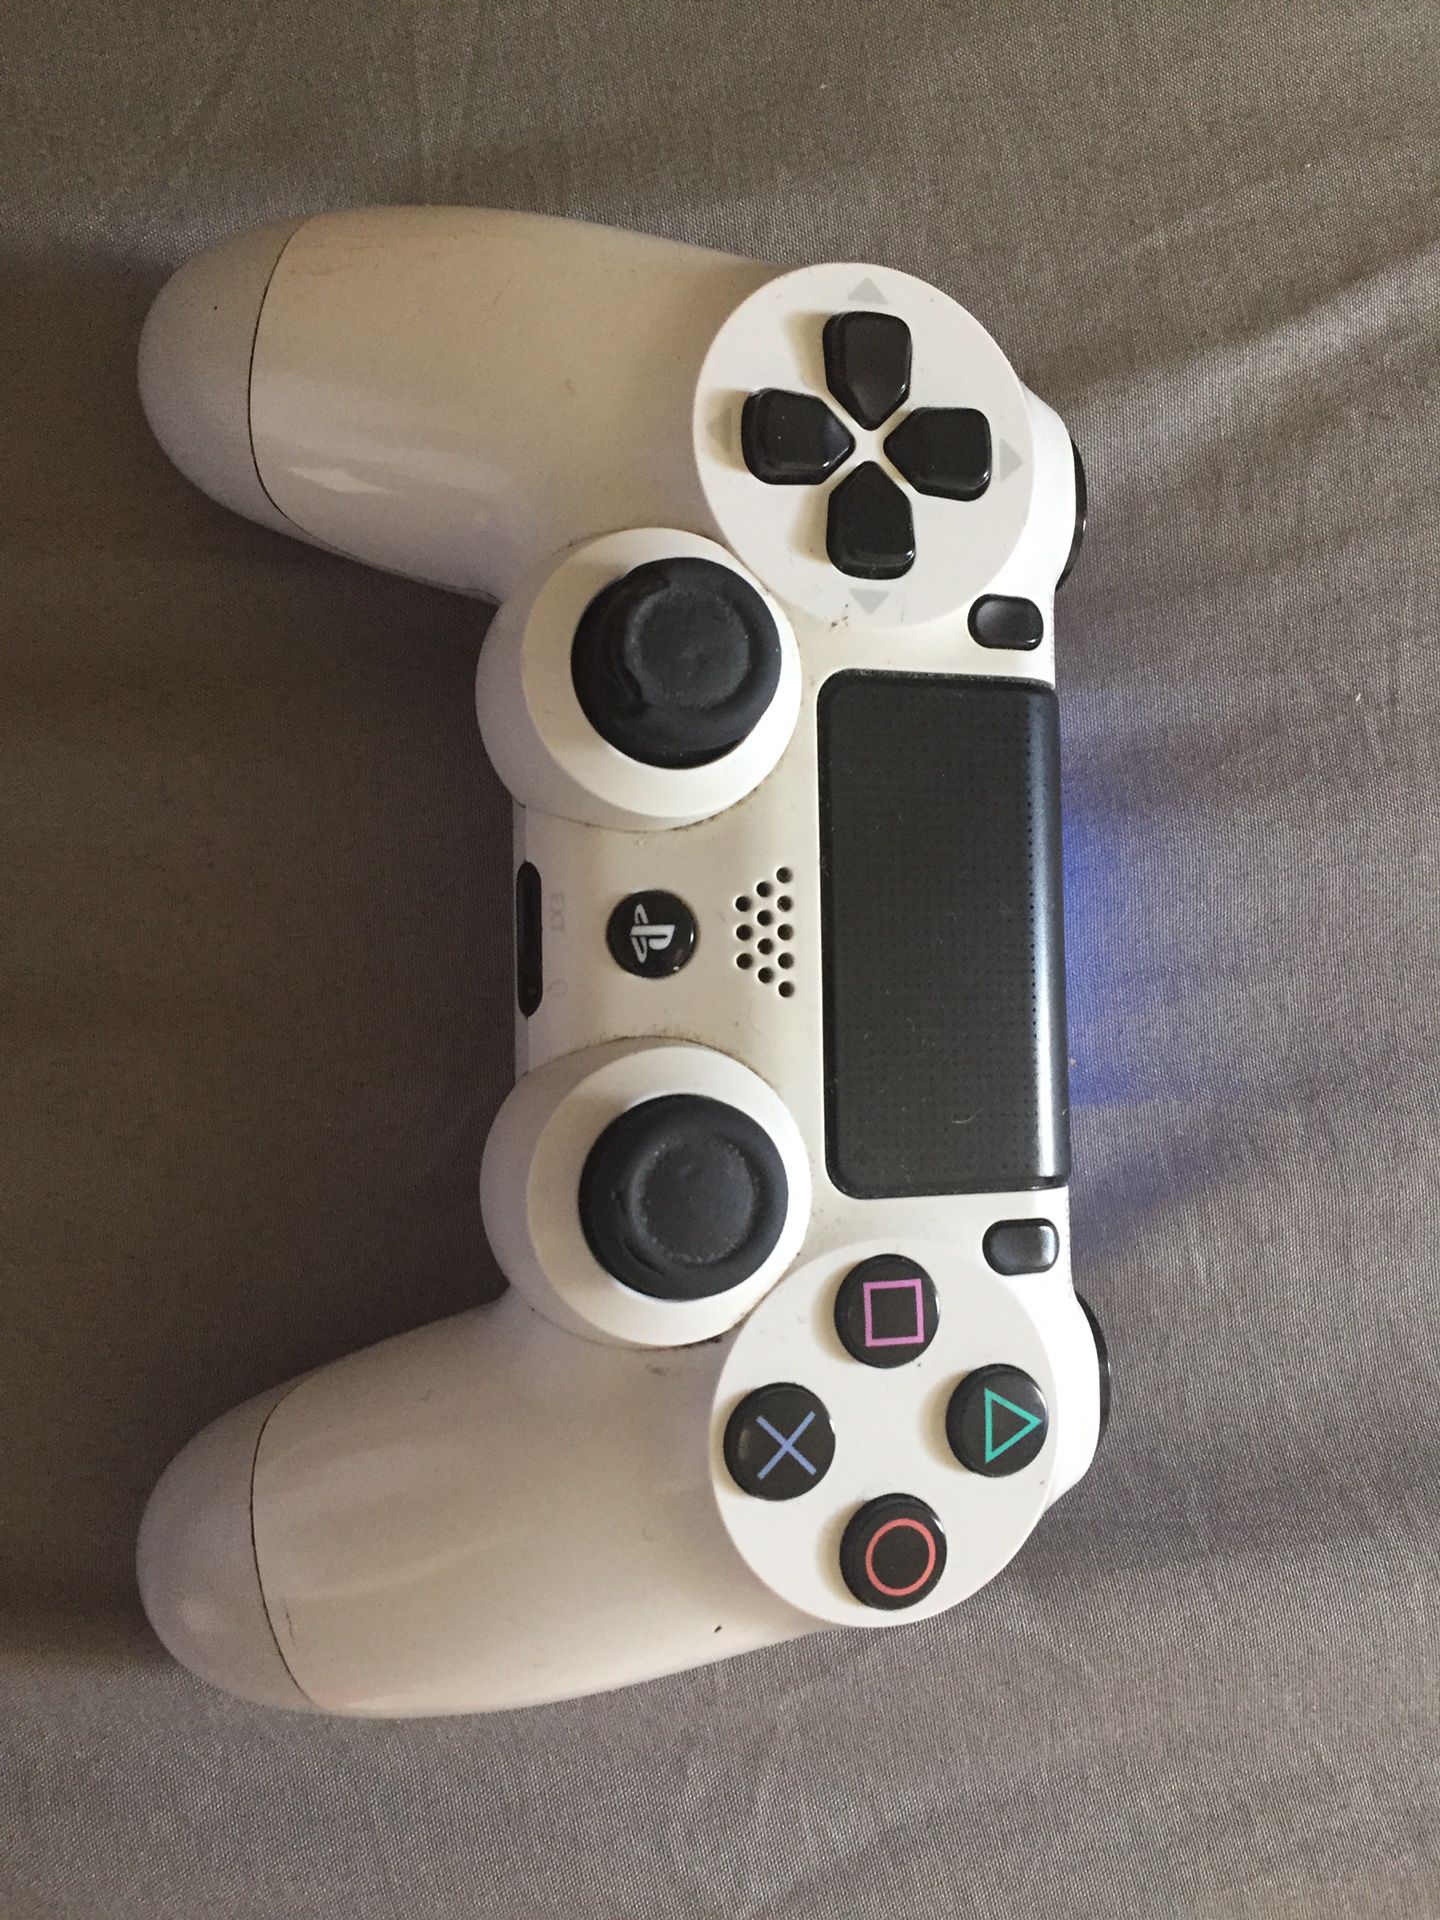 PS4 control